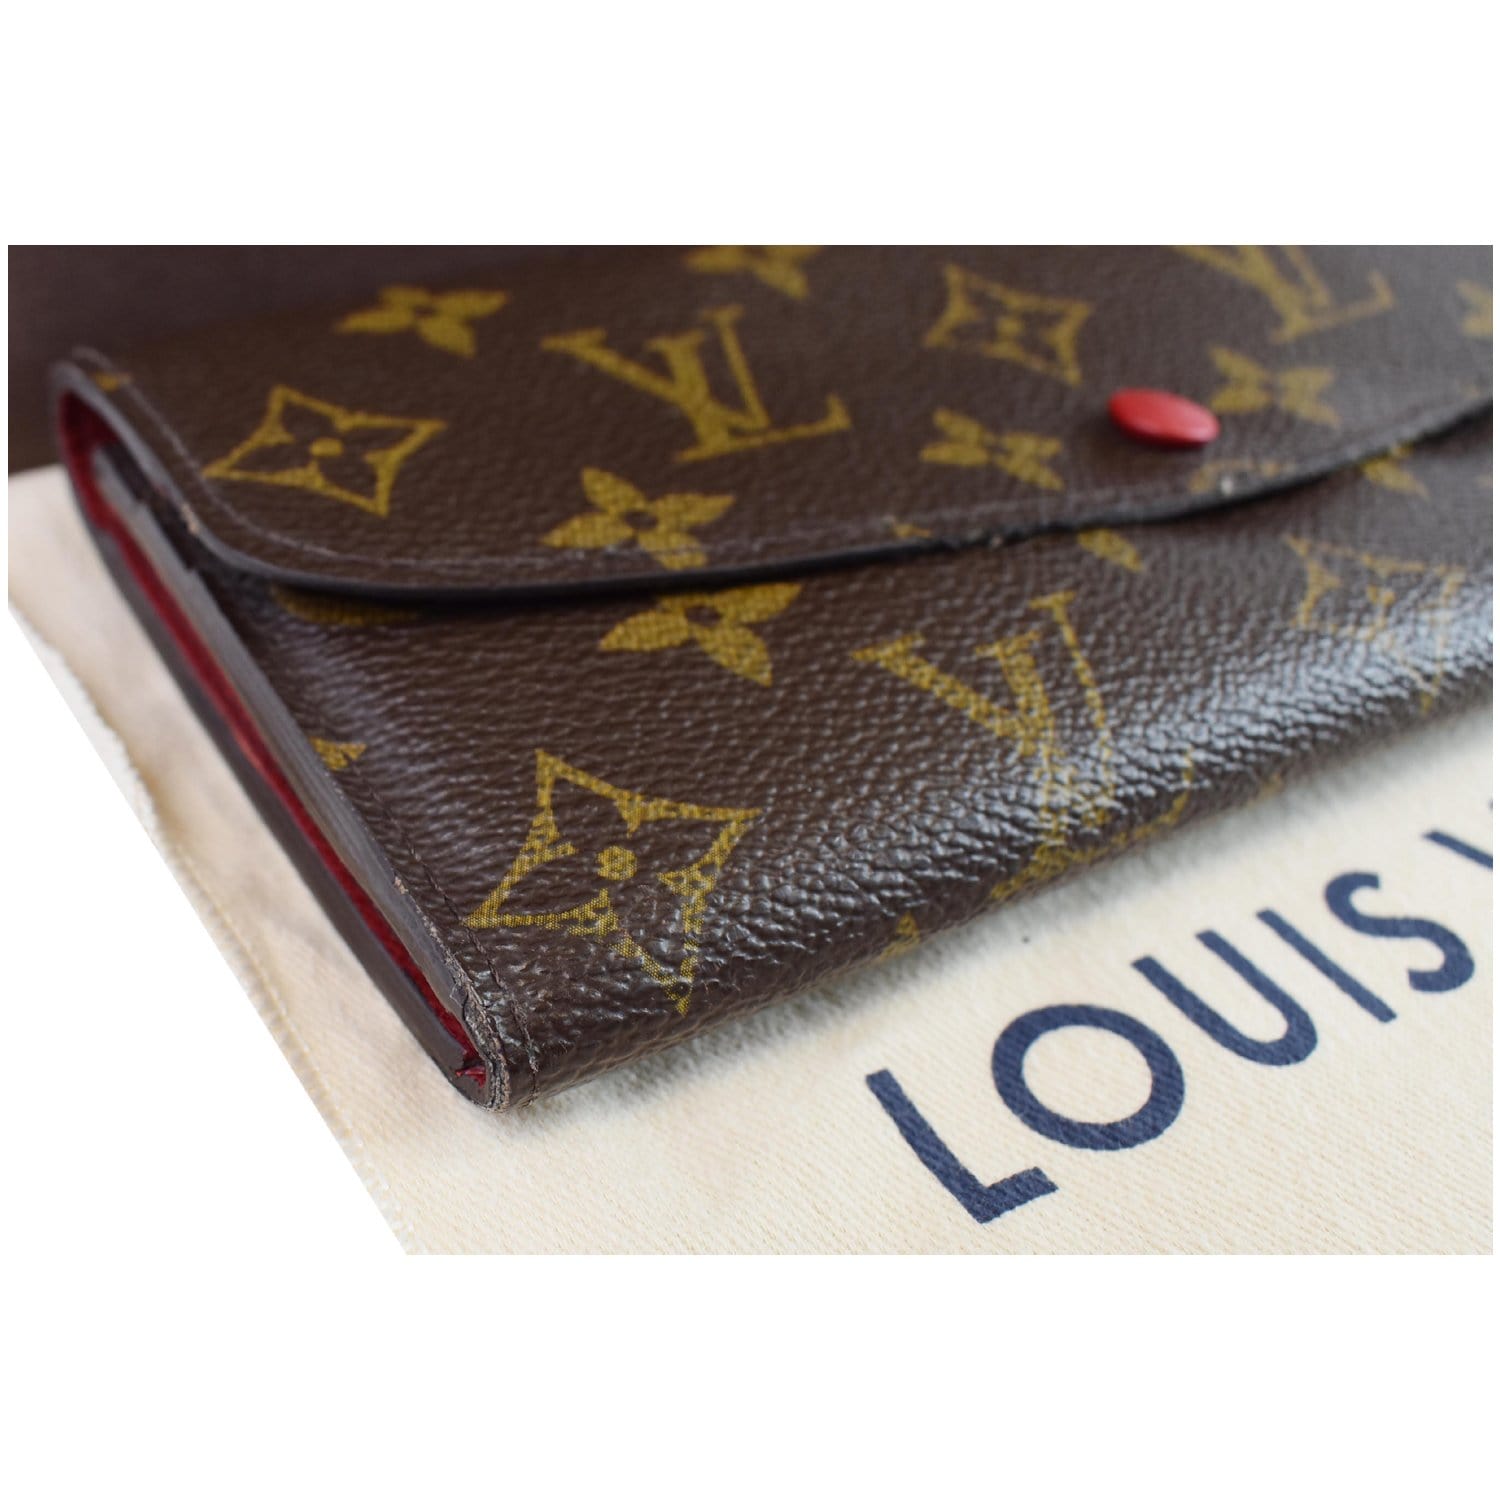 Preowned Louis Vuitton Emilie Monogram Canvas Wallet